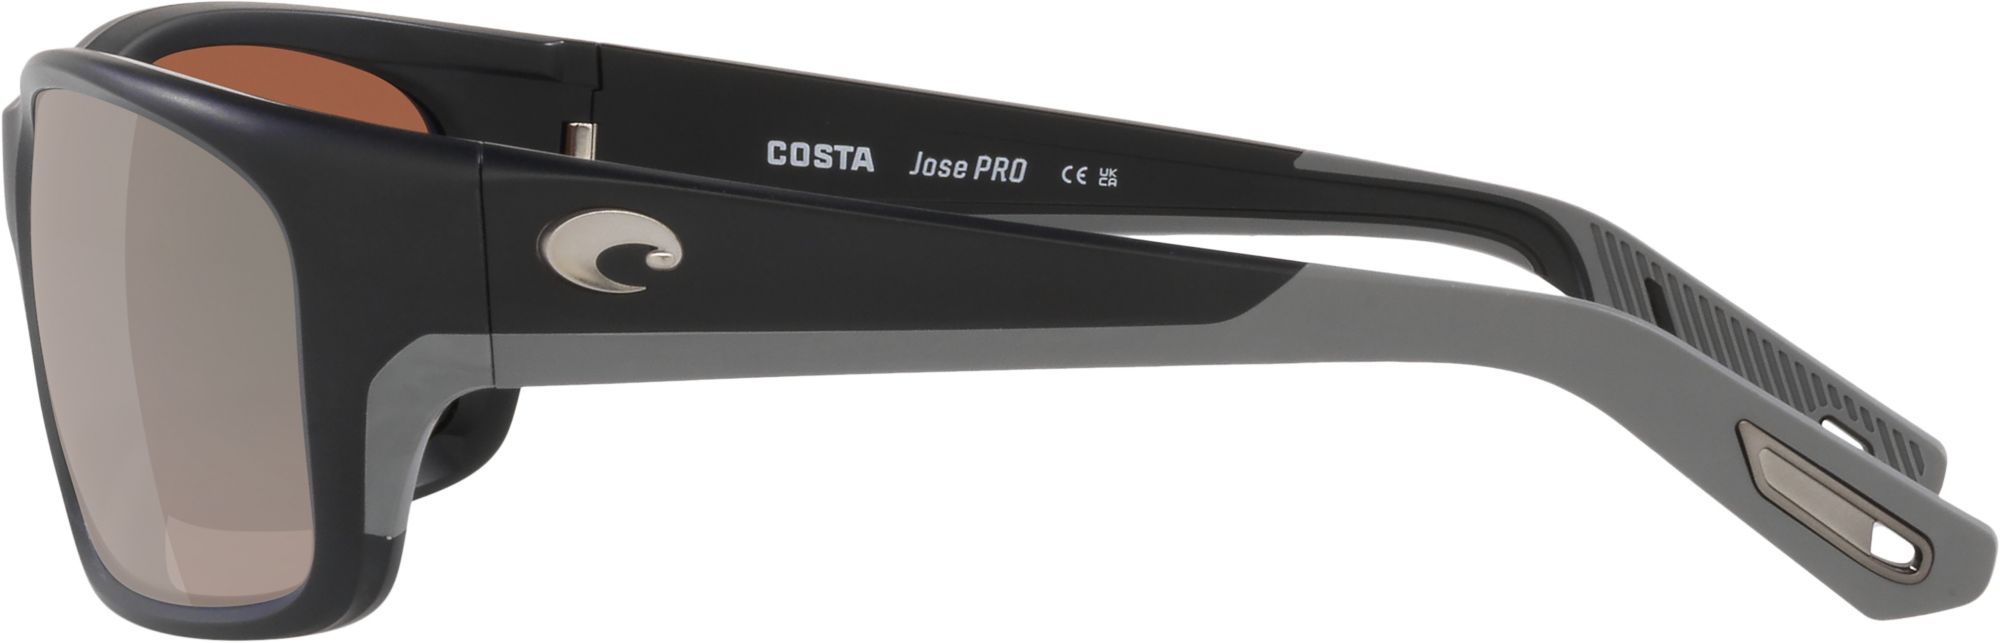 Costa Del Mar Jose Pro Sunglasses Matte Black Copper Silver Mirror 580g